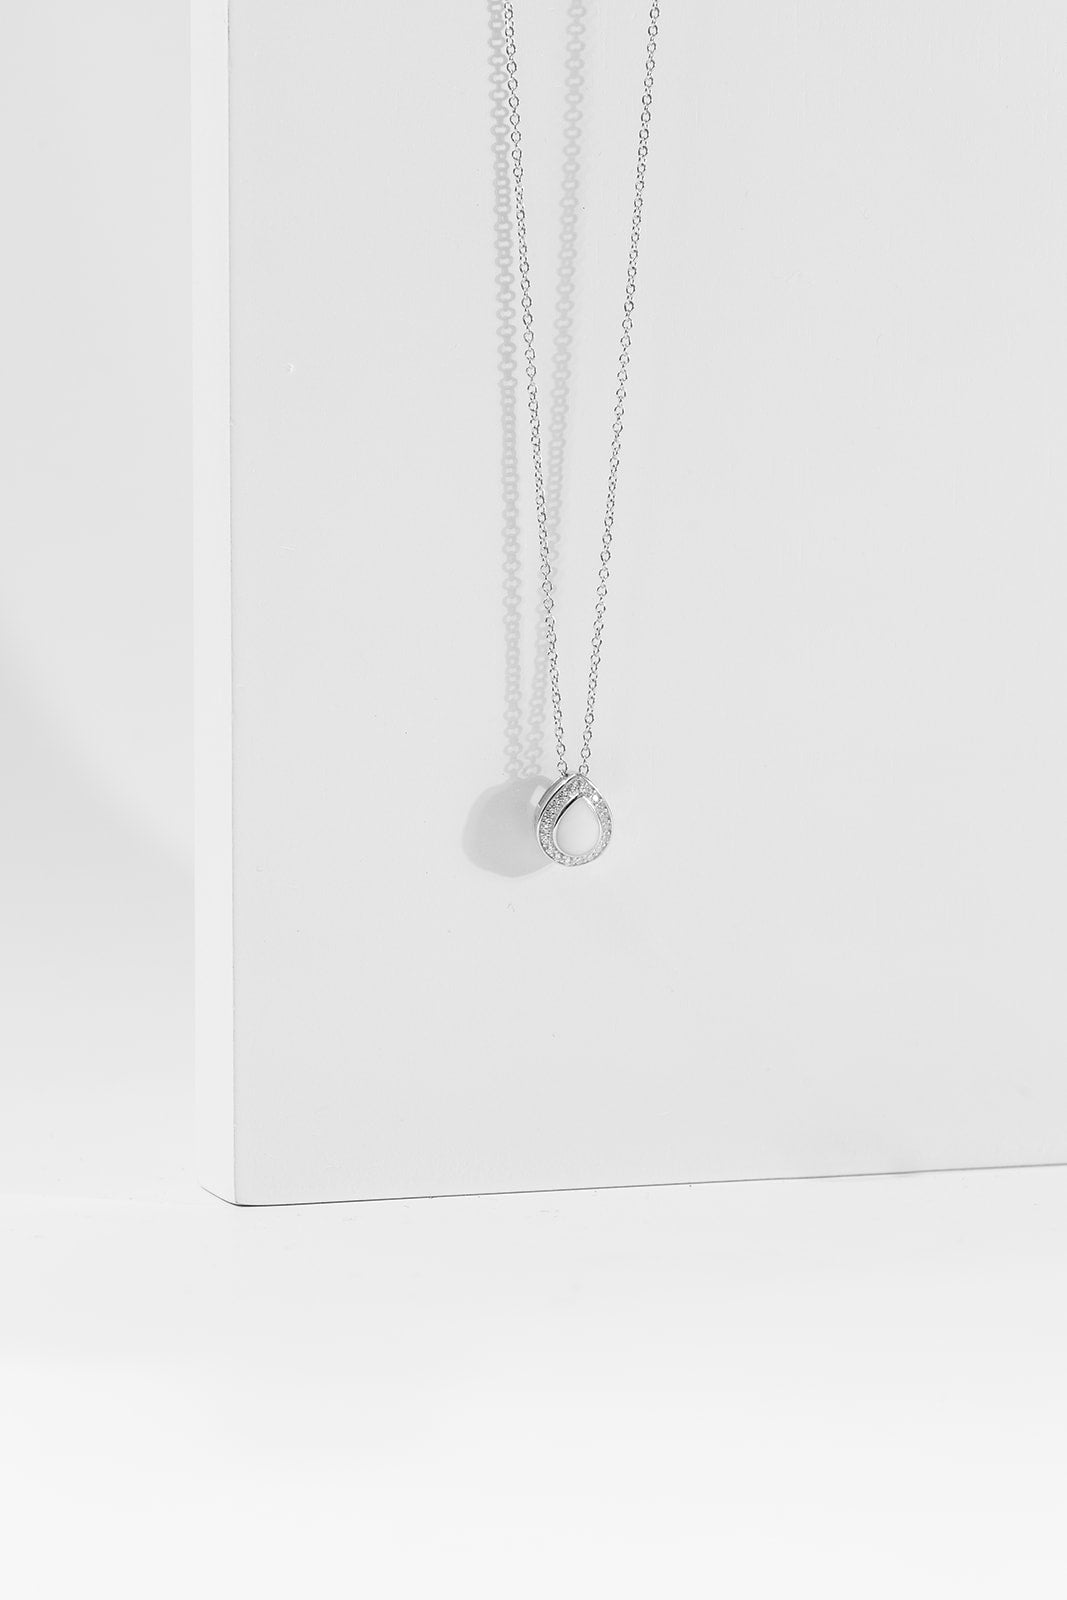 Halo Necklace - Silver